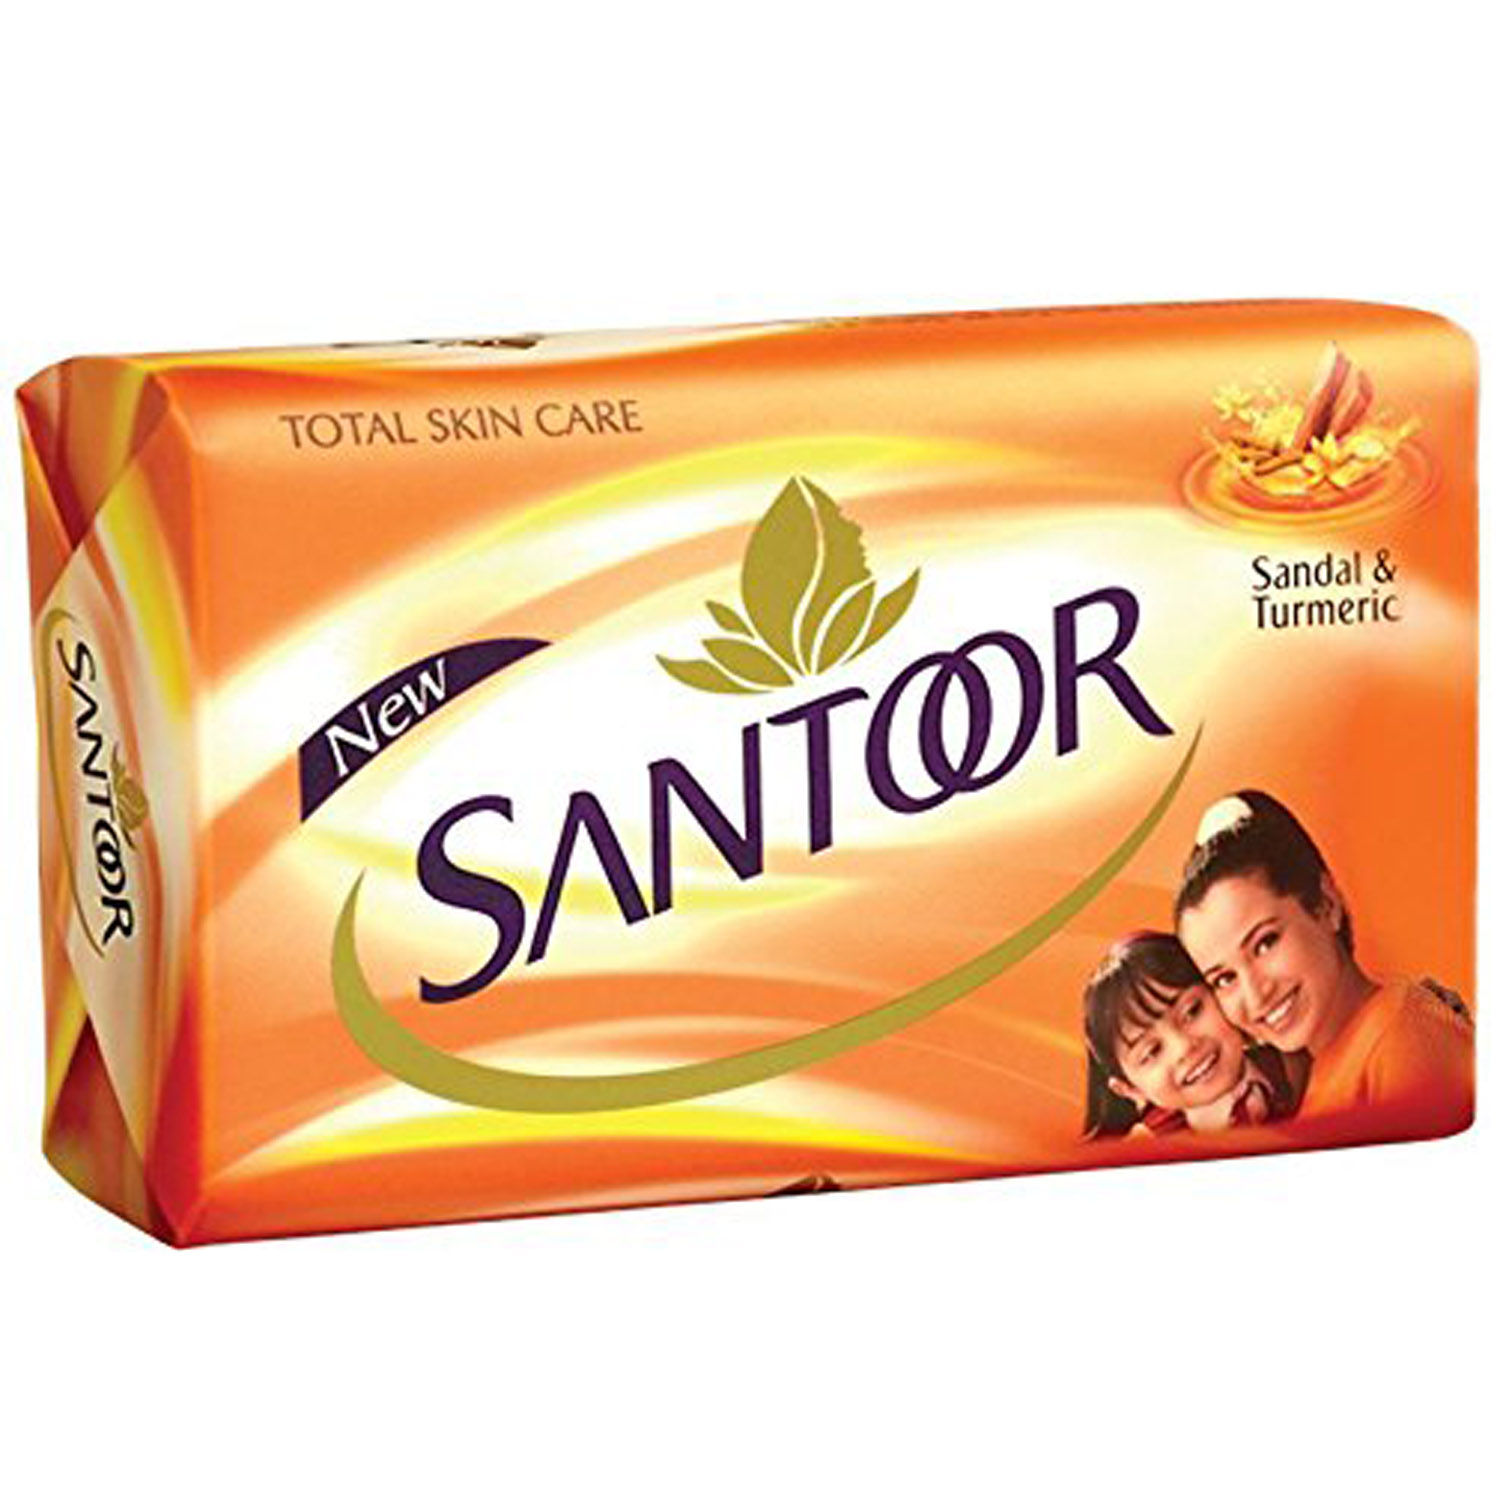 Santoor Sandal & Turmeric Soap, 150 gm, Pack of 1 